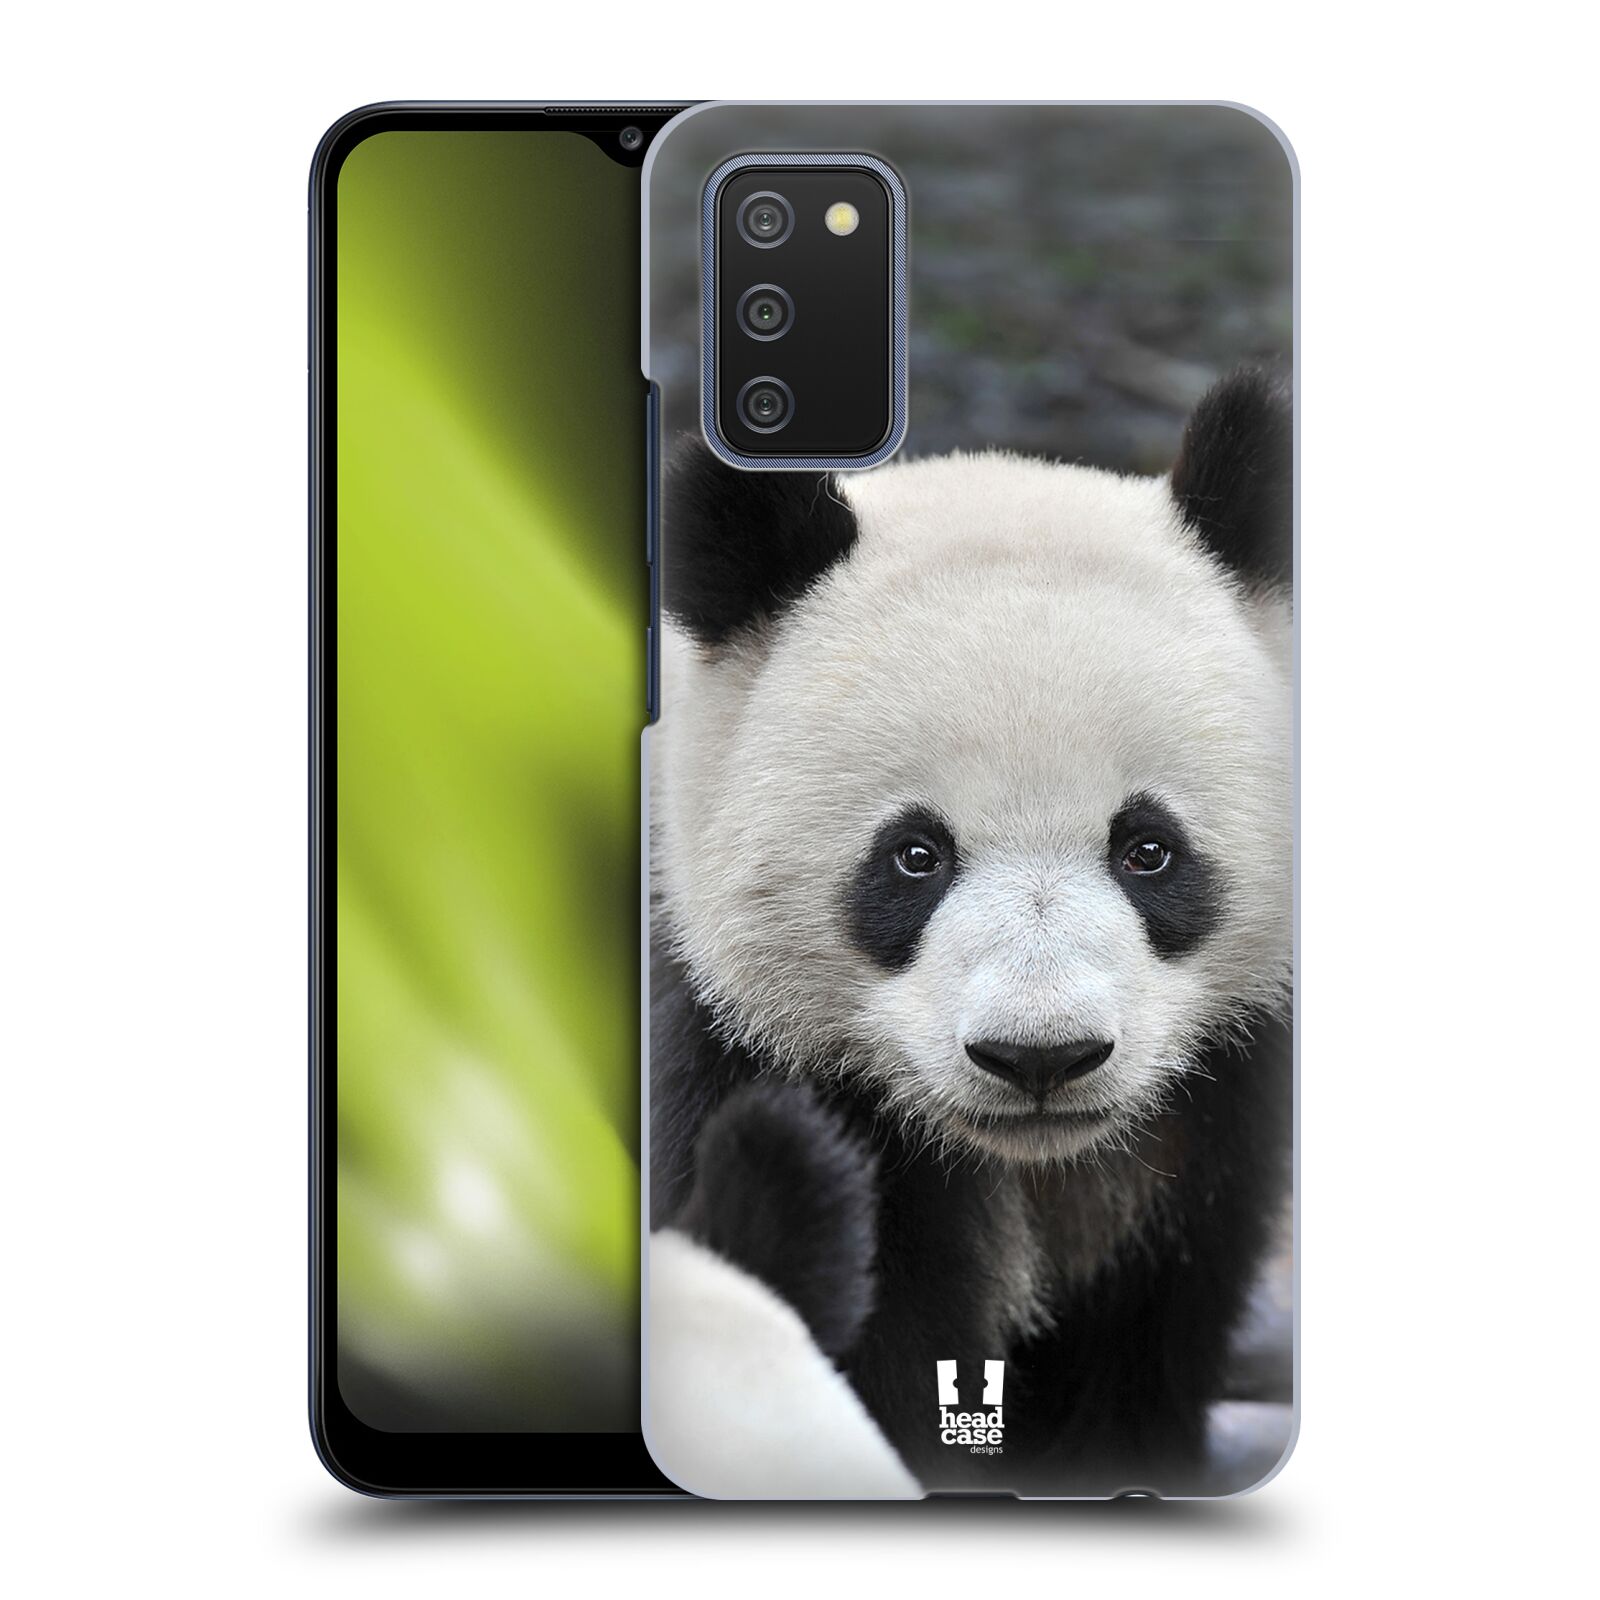 Zadní obal pro mobil Samsung Galaxy A02s - HEAD CASE - Svět zvířat medvěd panda